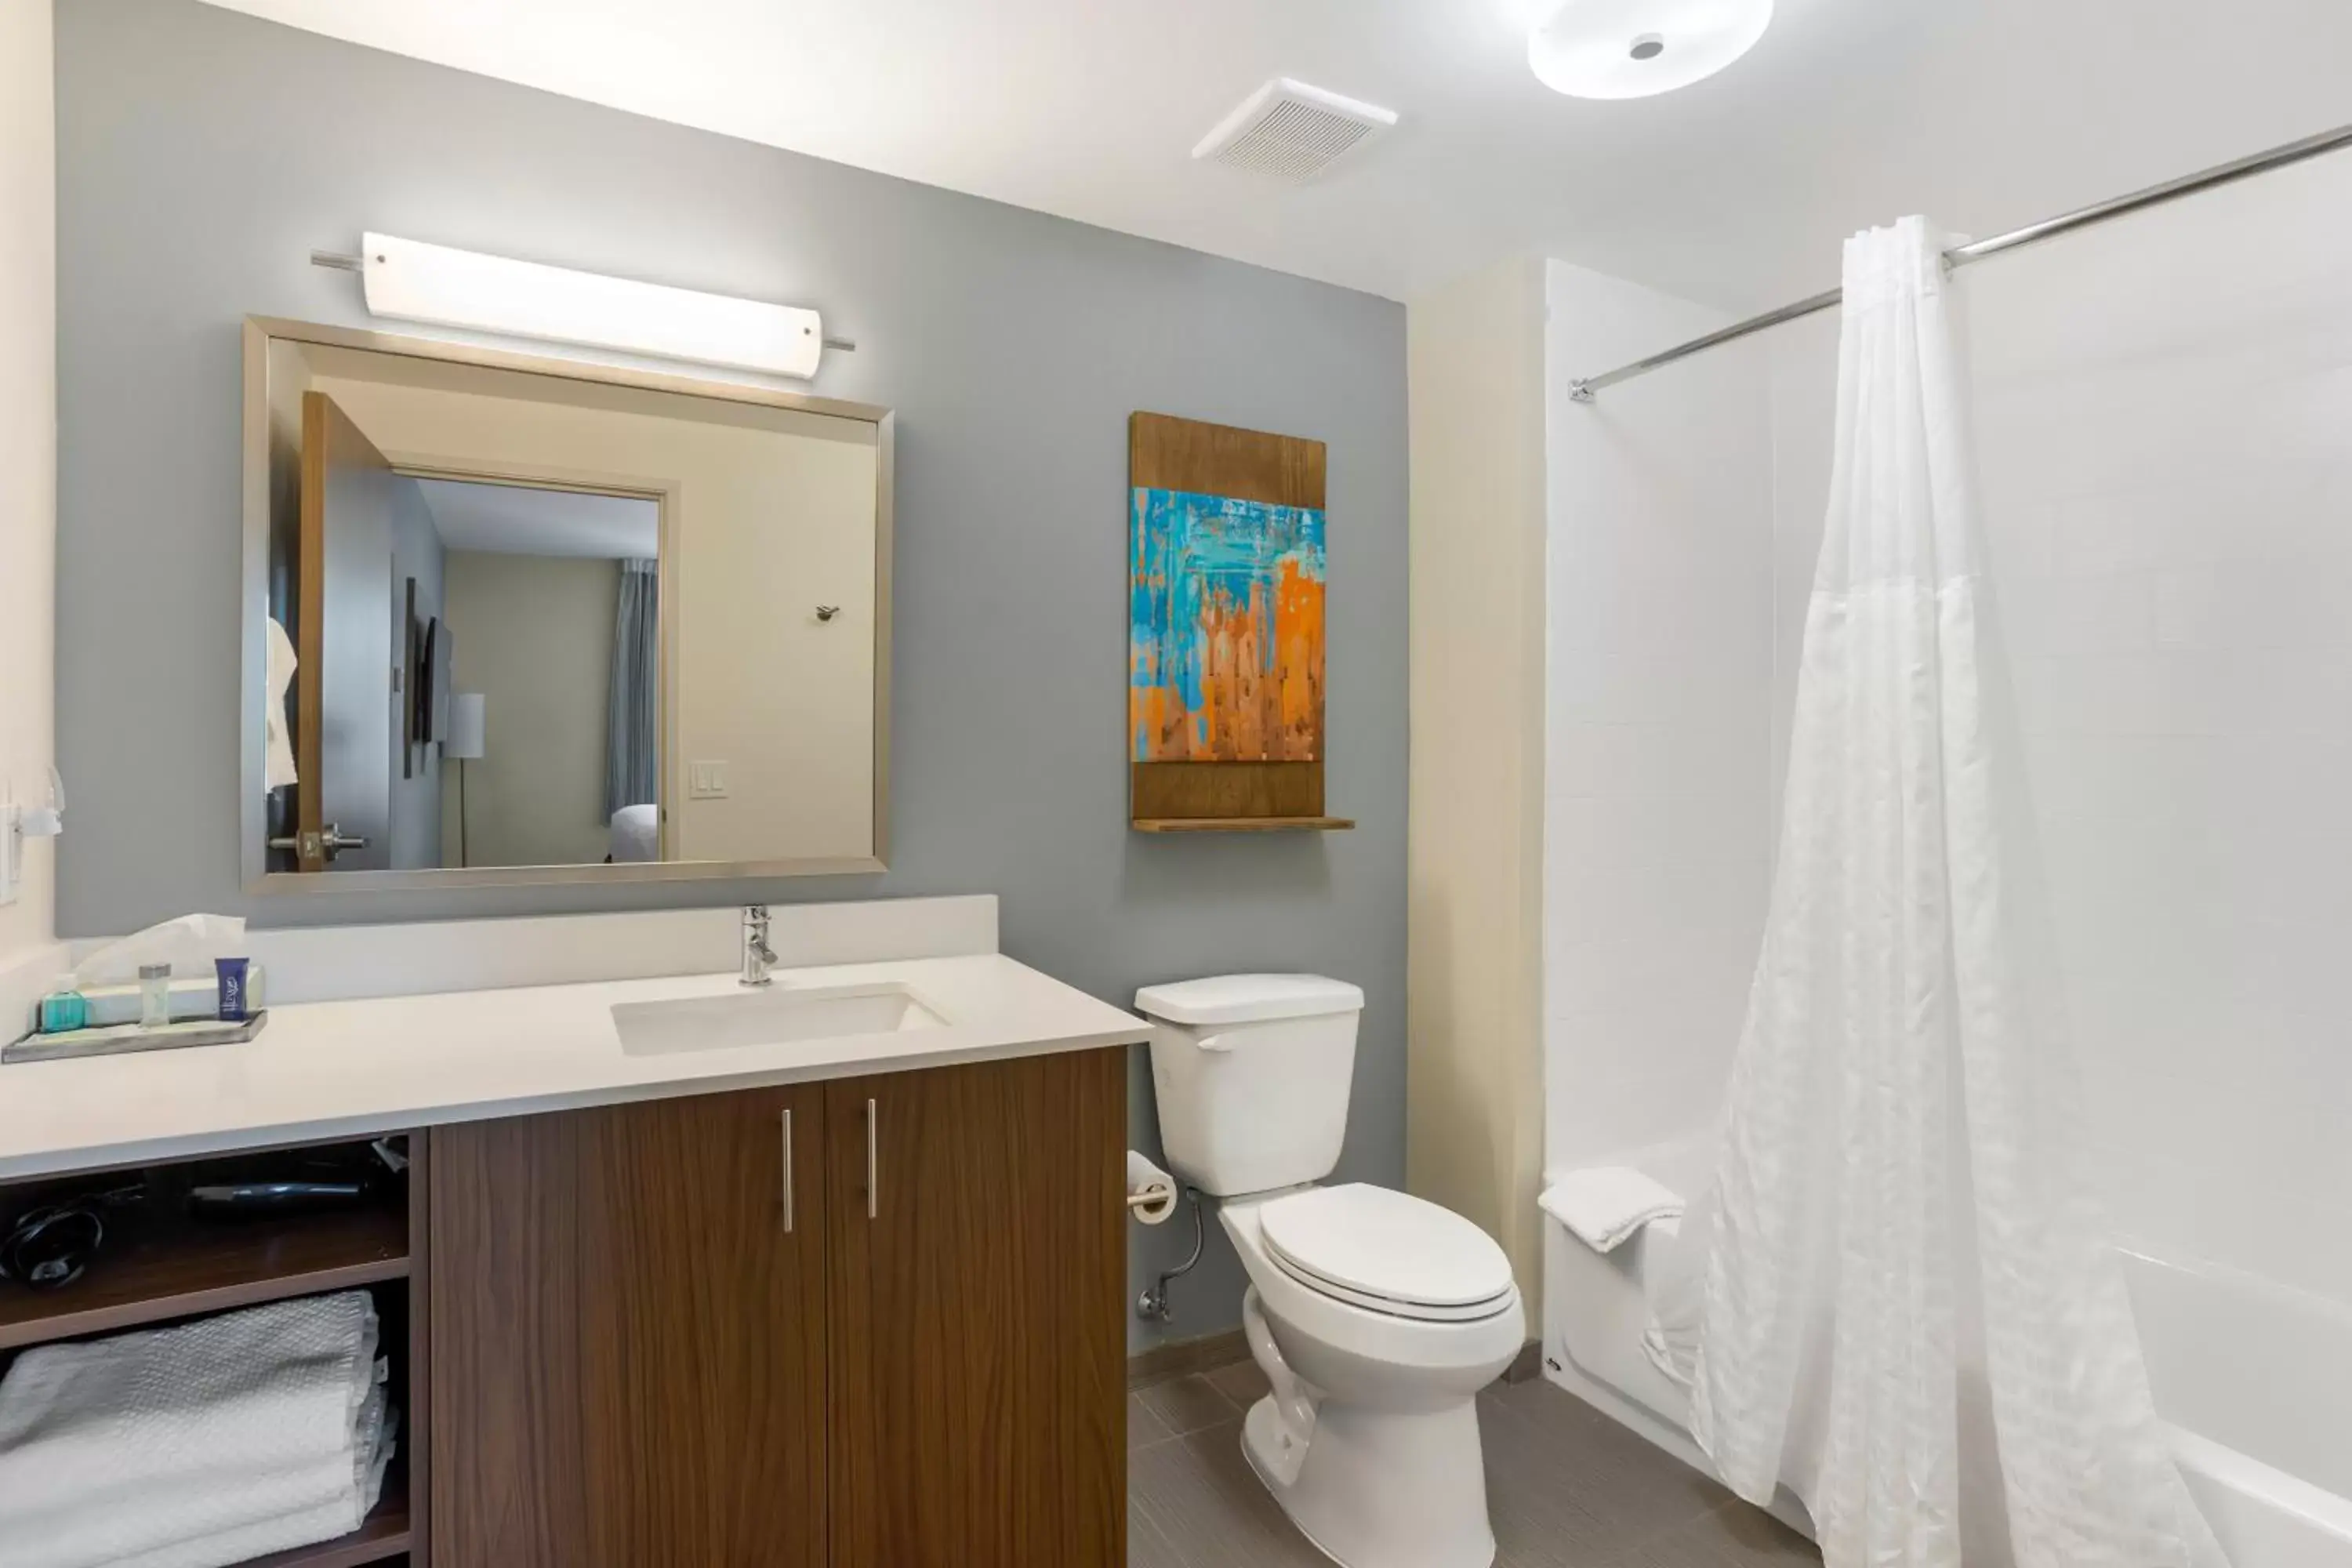 Bathroom in MainStay Suites North - Central York